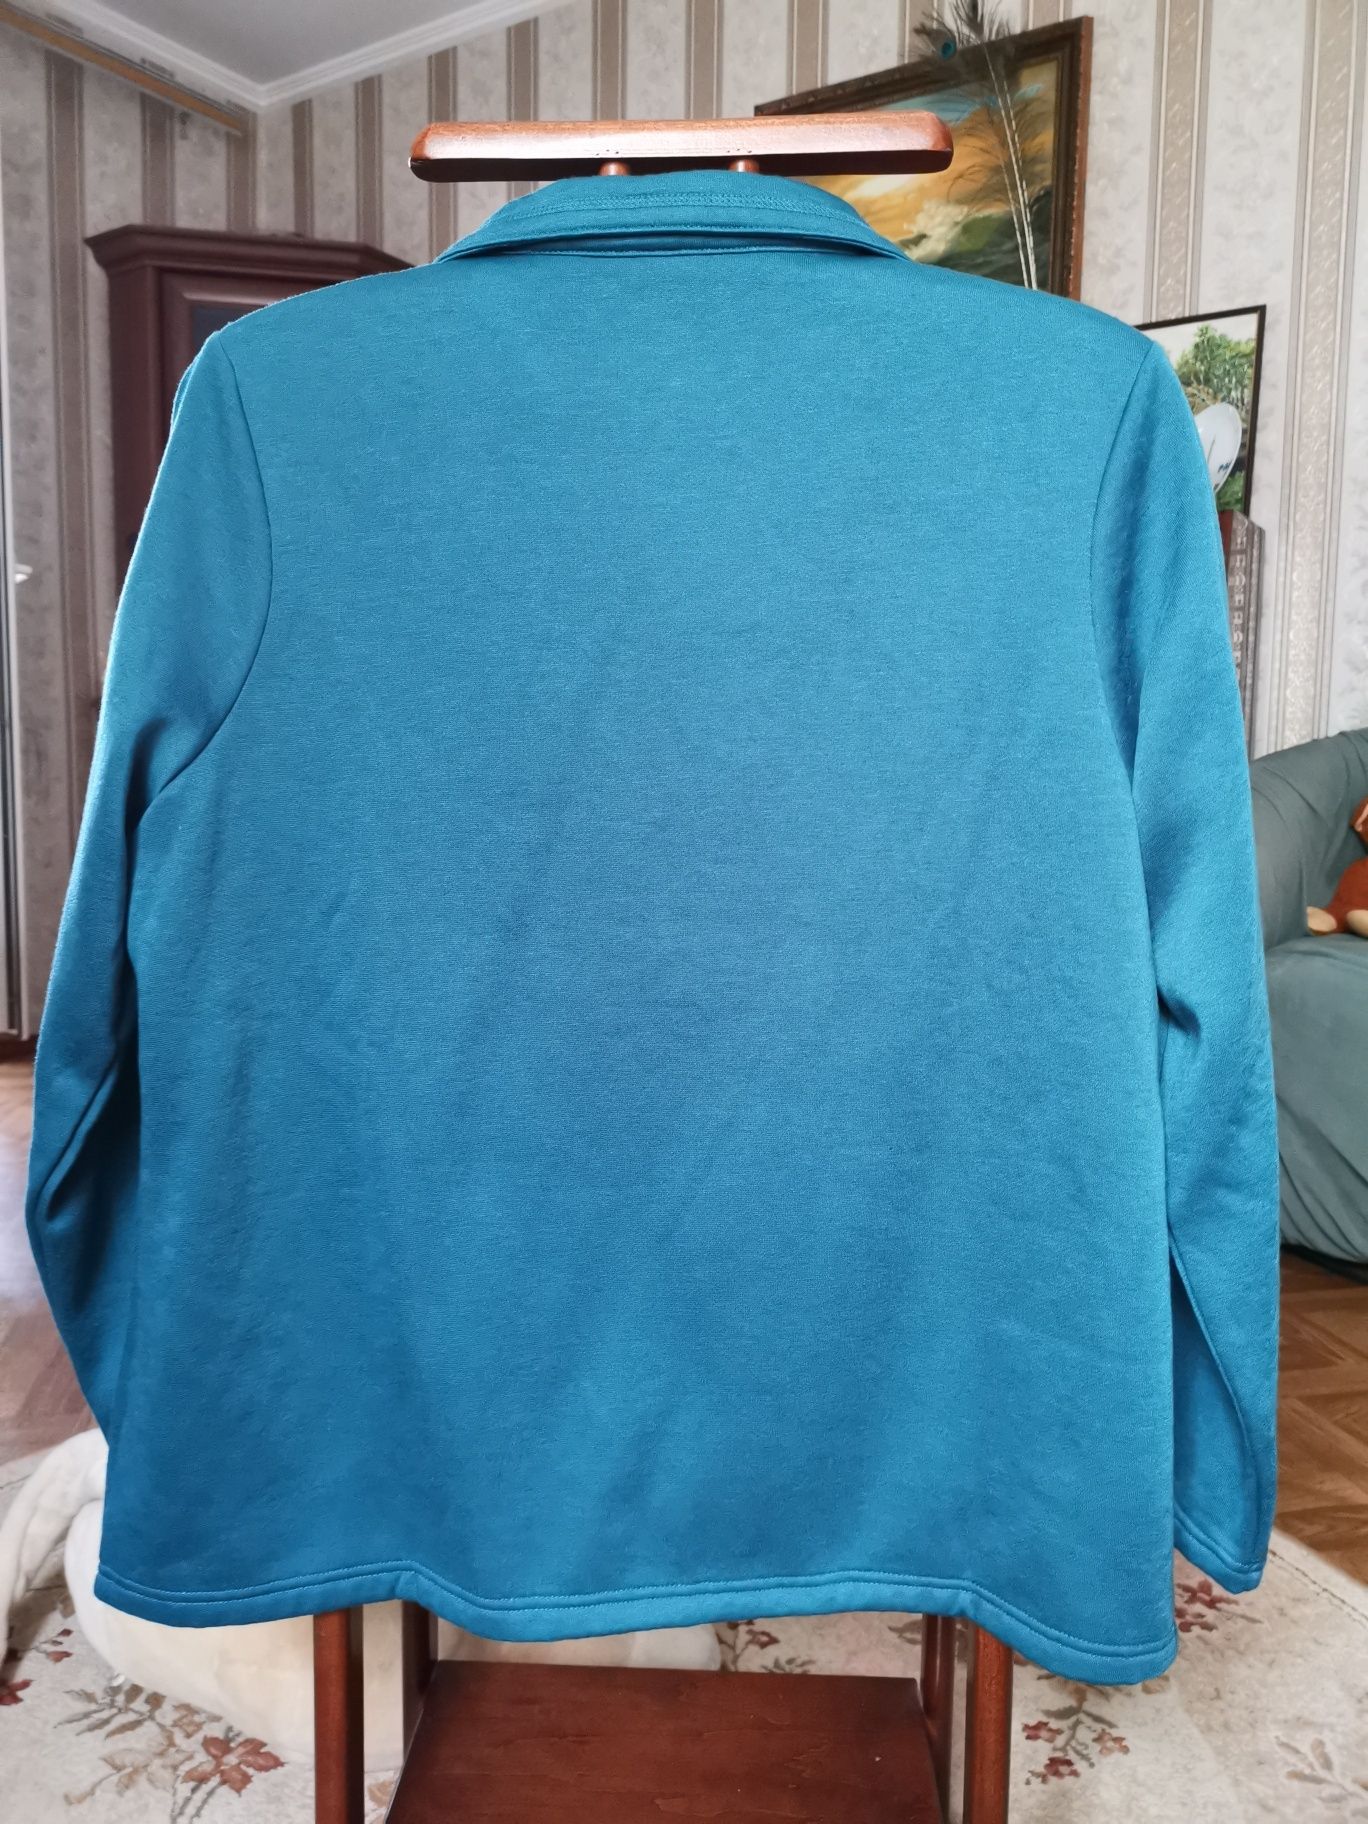 Пиджак на флисе 52-54 размер, Damart, Великобритания